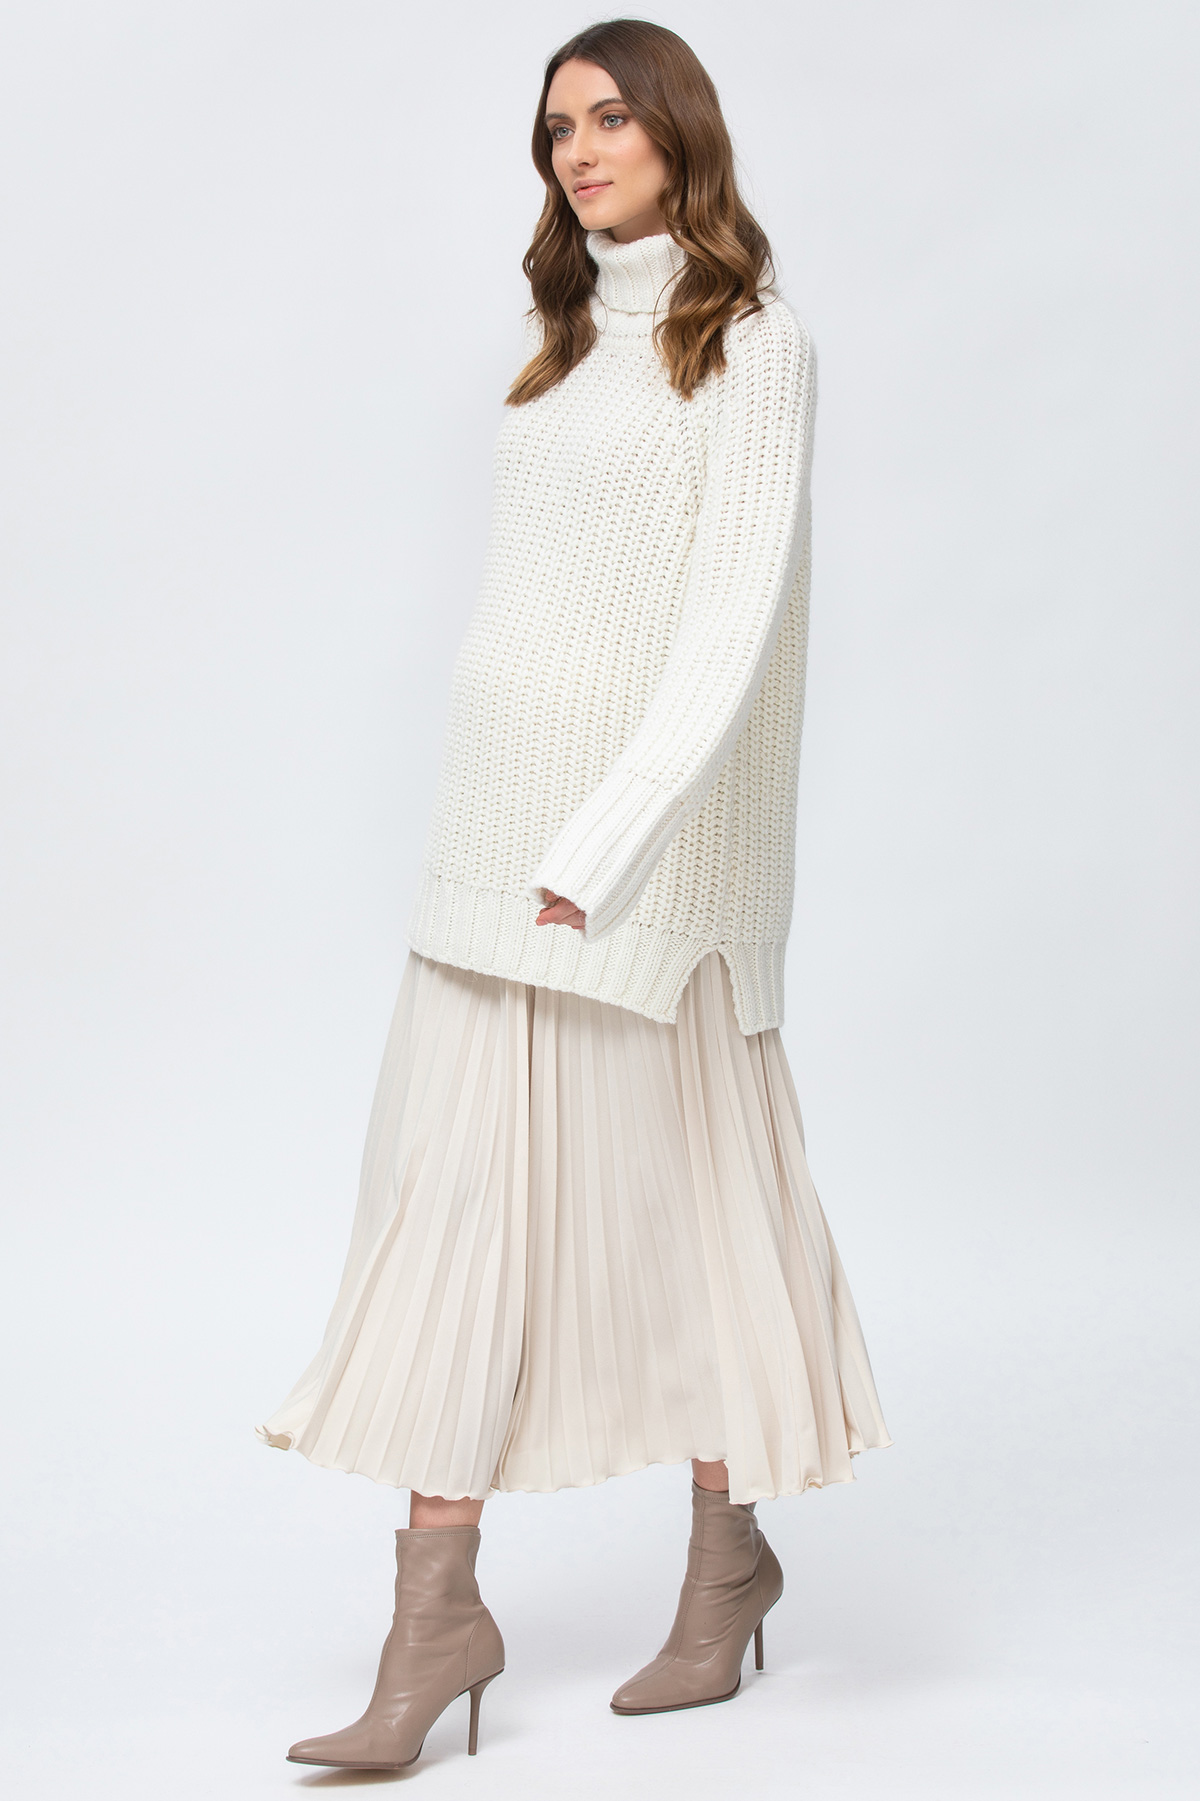 Alaska Maternity Wool Sweater in Cream White - hautemama